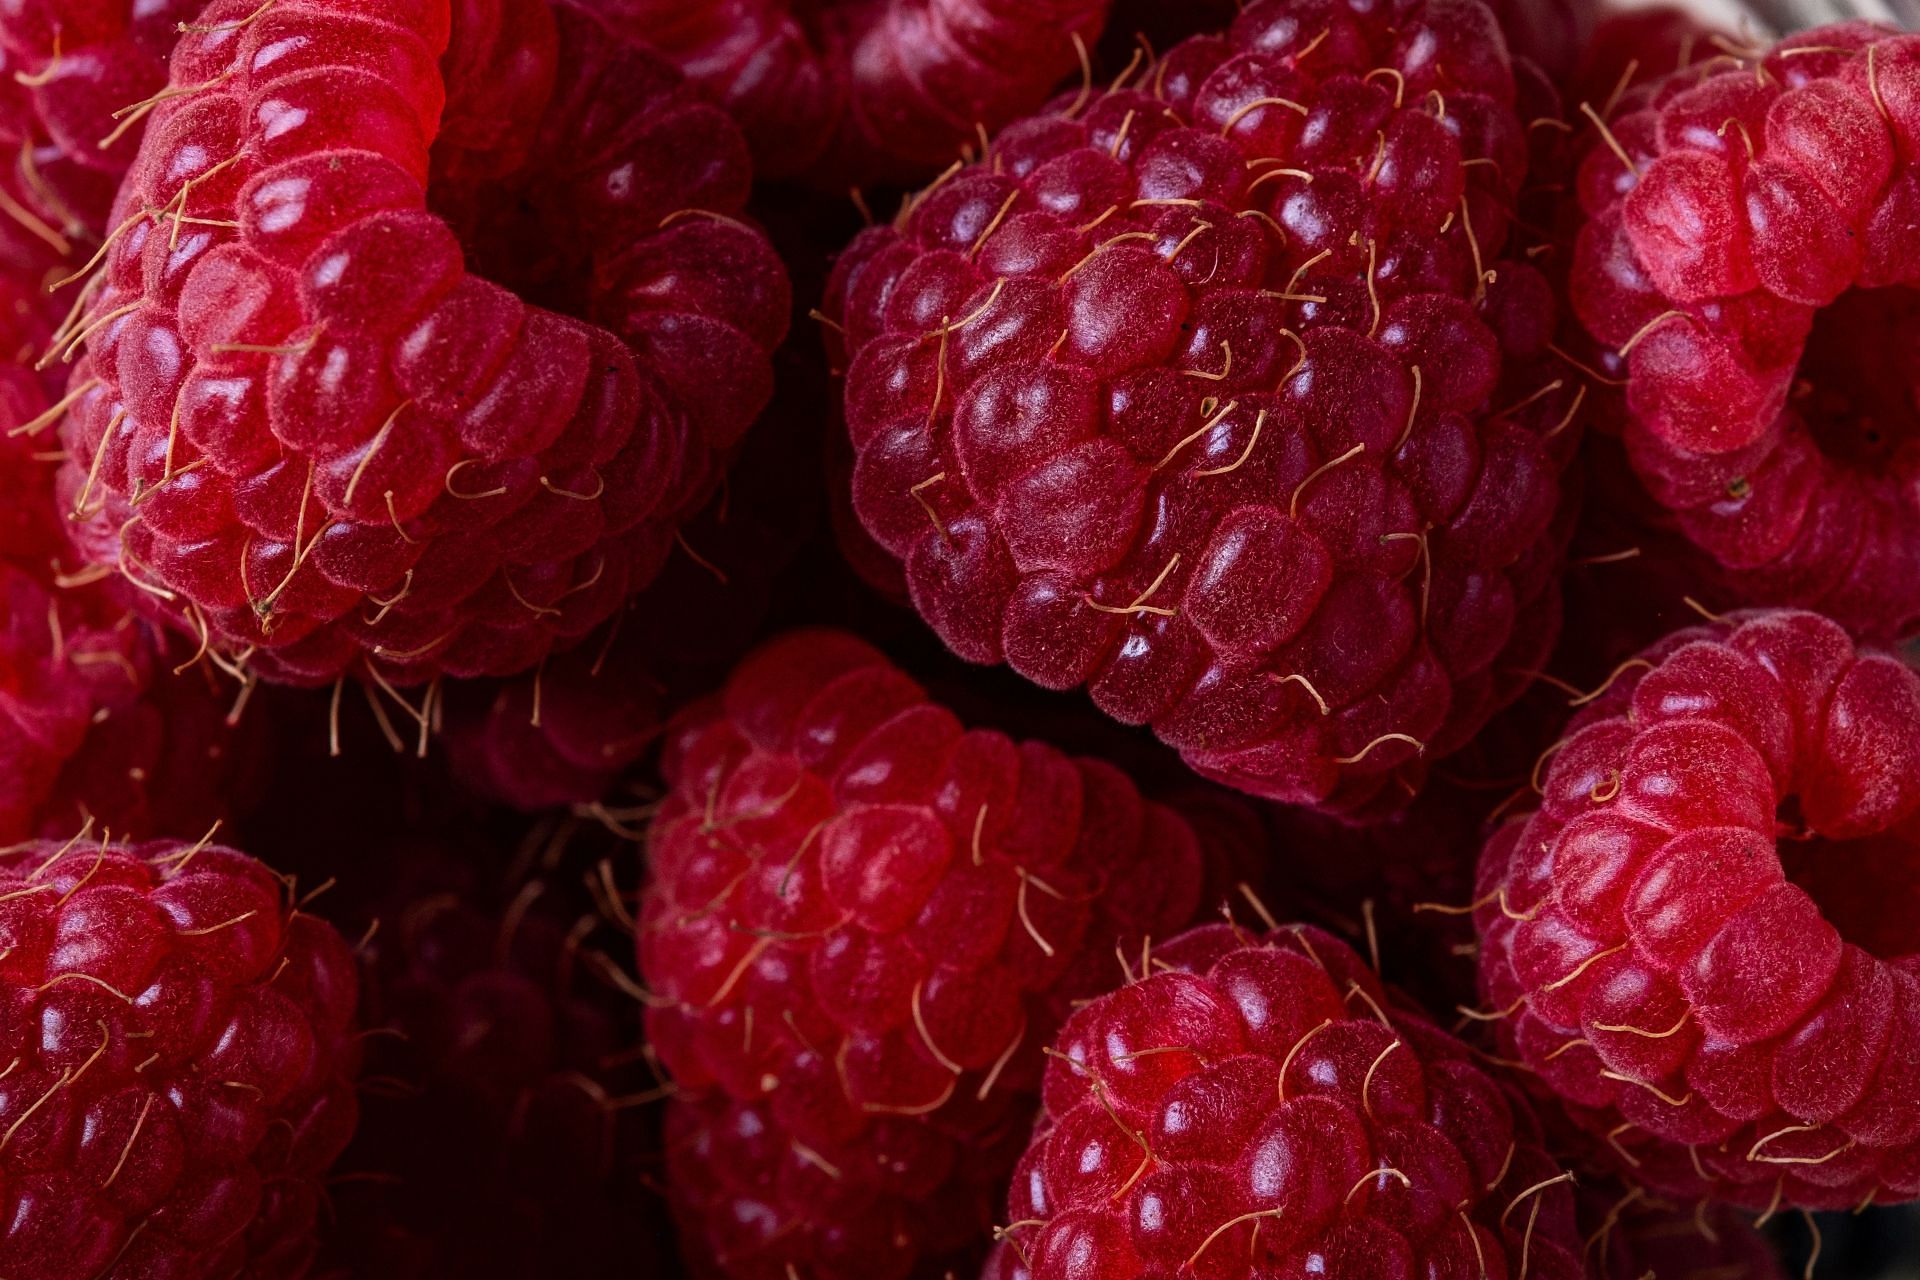 Raspberries are high in dietary fibers. (Image via Pexels/Rodion Kutsaiev)